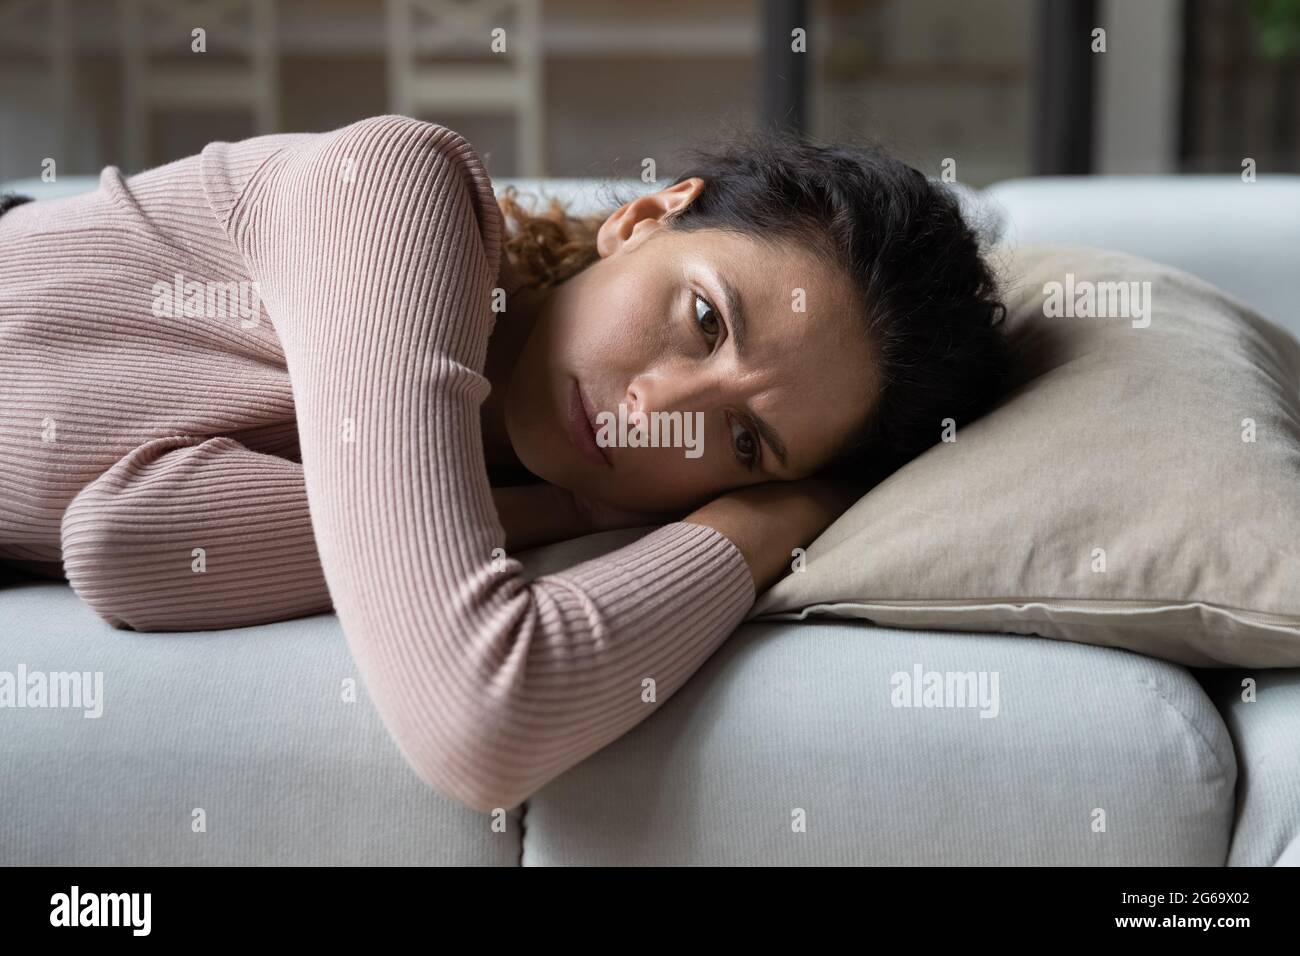 Une jeune femme malheureuse se sentant ennuyée, allongée seule sur un canapé. Banque D'Images